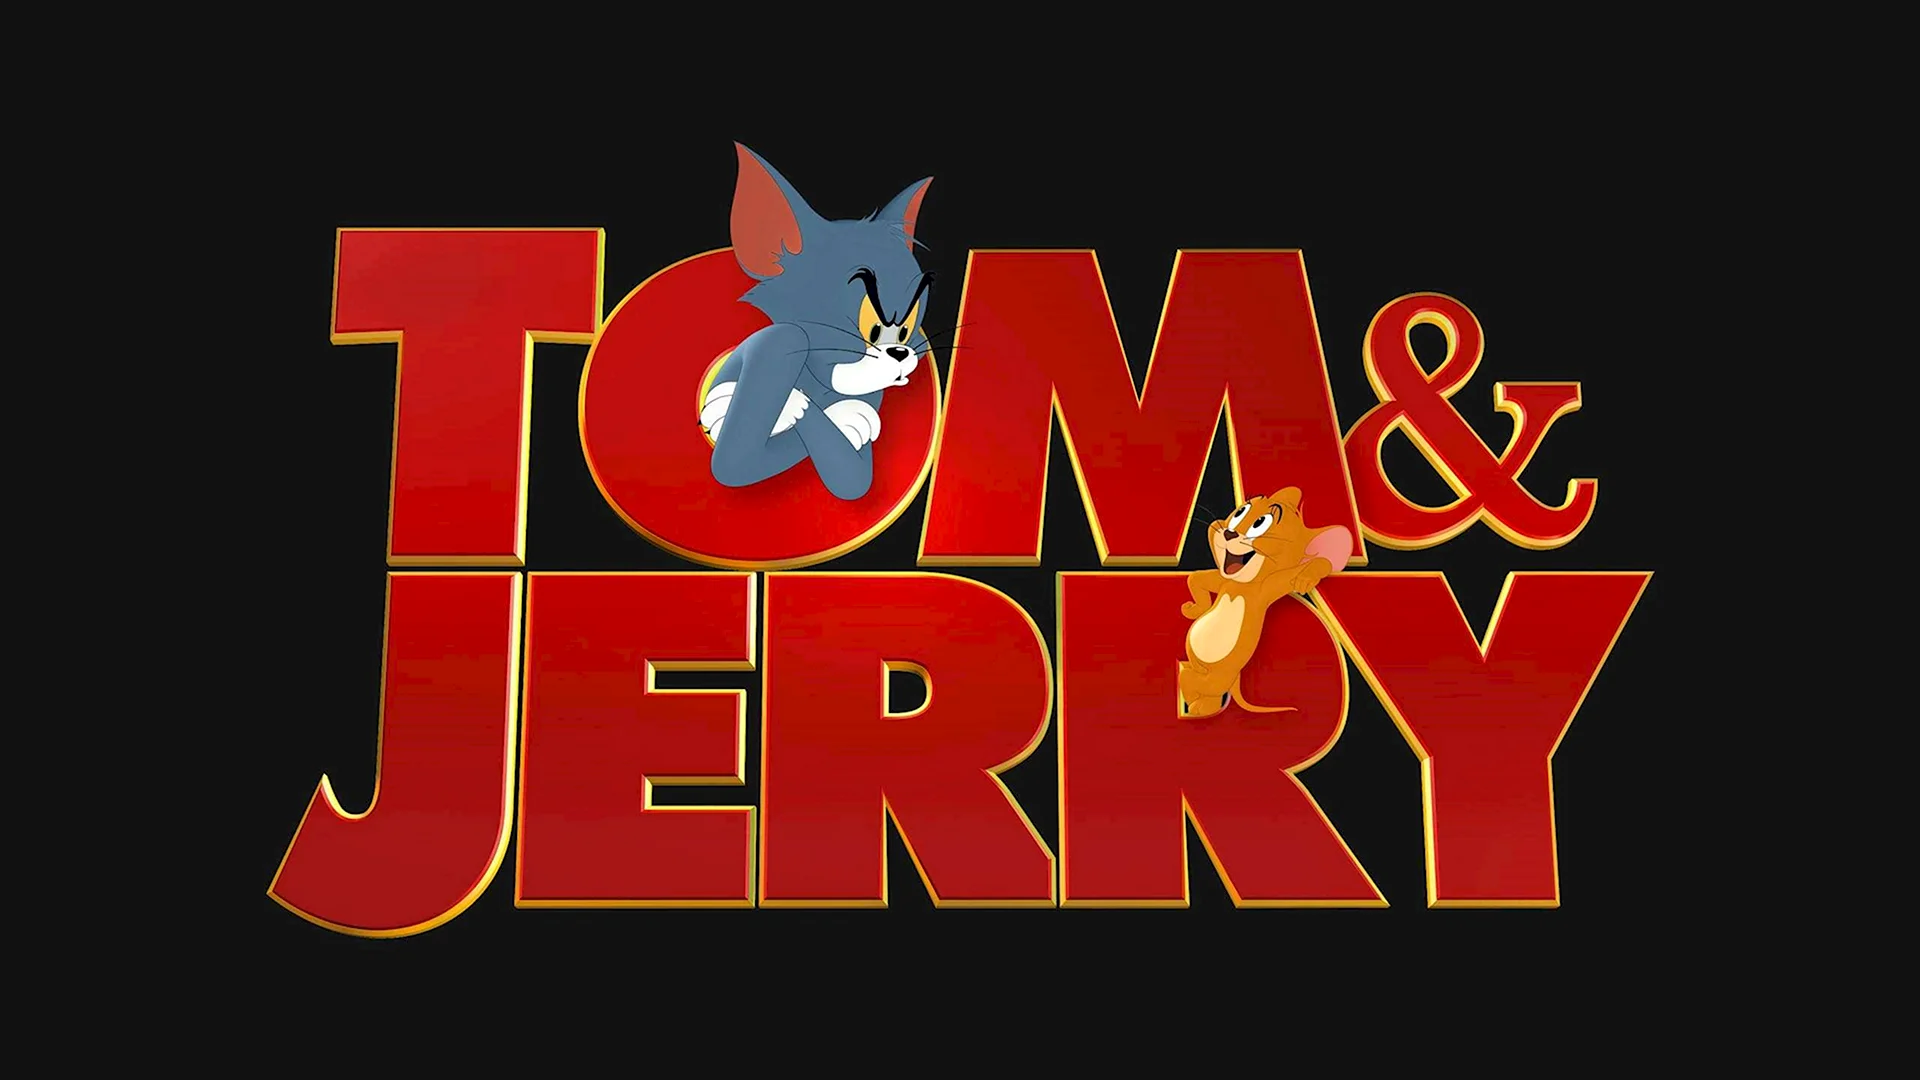 Том и Джерри фильм 2021